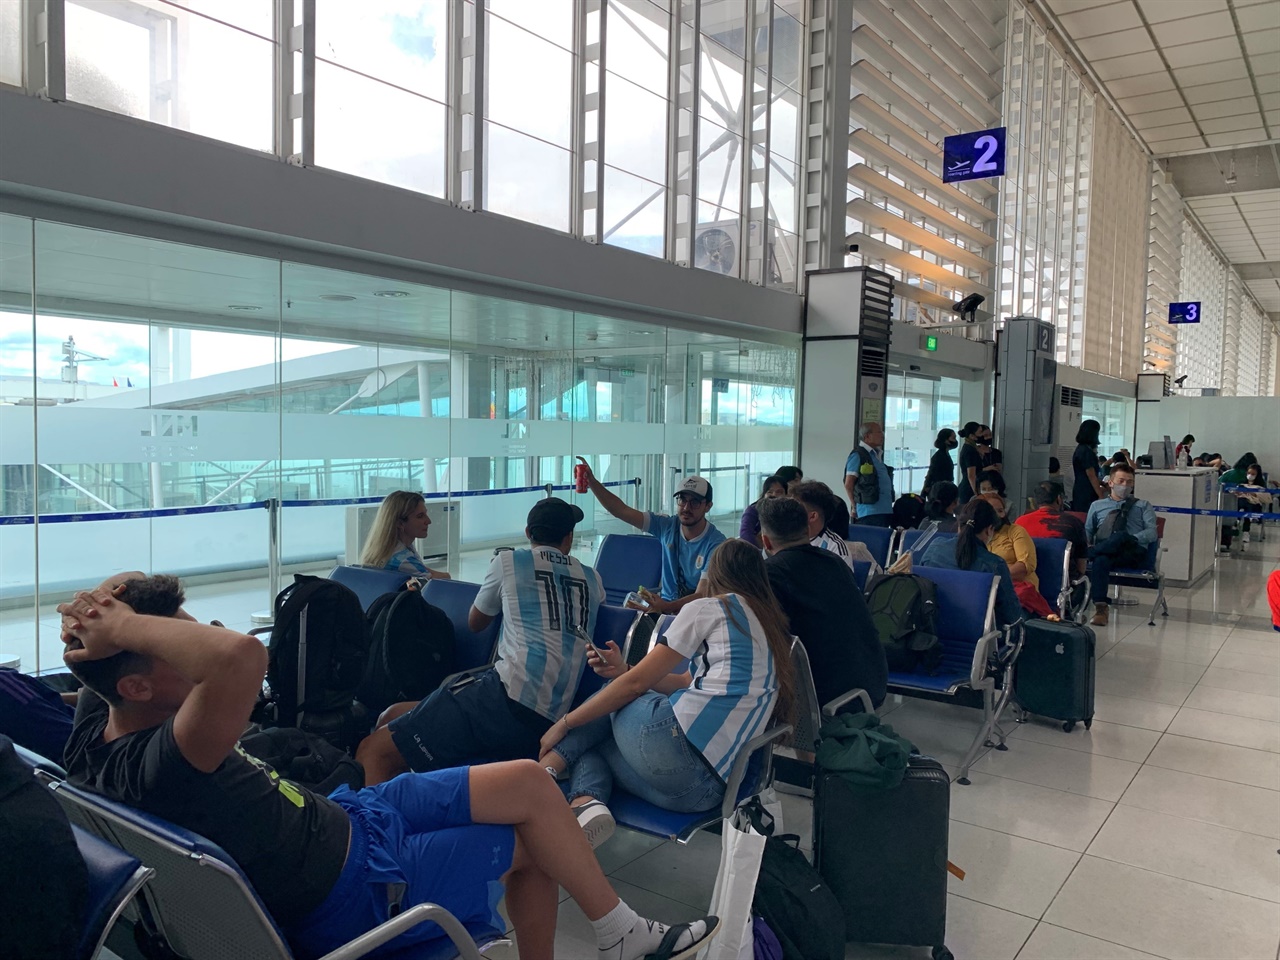 마닐라 공항에서 아르헨티나 팬들을 만났습니다.  인천에서 마닐라를 거쳐 도하로 가는 비행편입니다. 도하 공항에서 마주친 아르헨티나 팬들에게 진지하게 응원을 보냈습니다. 아자!